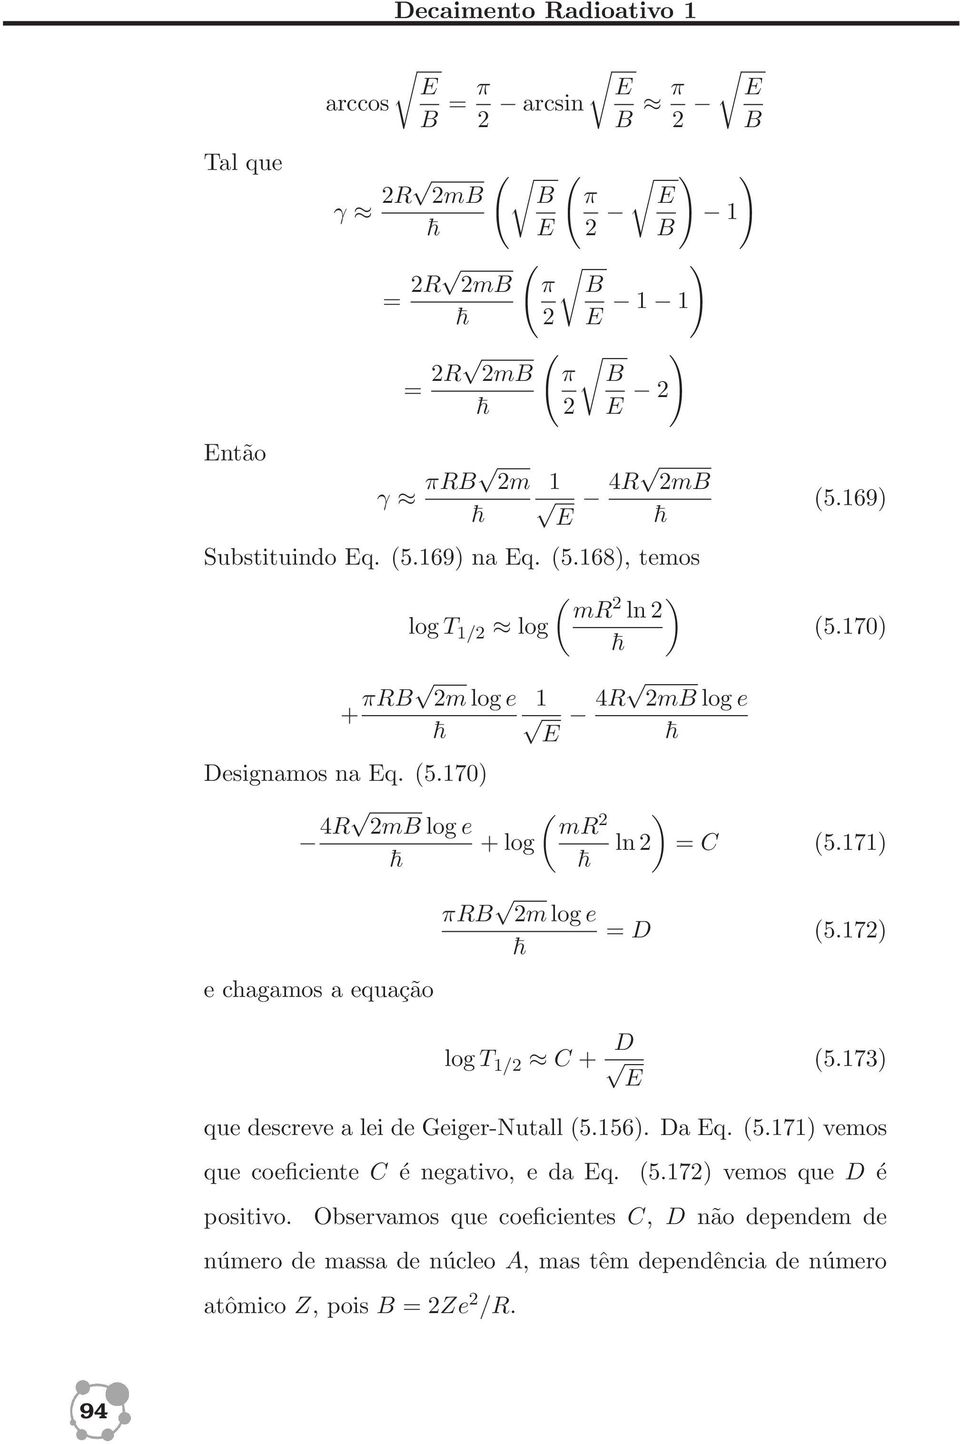 171) e chagamos a equação πrb 2mloge = D (5.172) logt 1/2 C + D E (5.173) que descreve a lei de Geiger-Nutall (5.156). Da Eq. (5.171) vemos que coeficiente C é negativo, e da Eq.